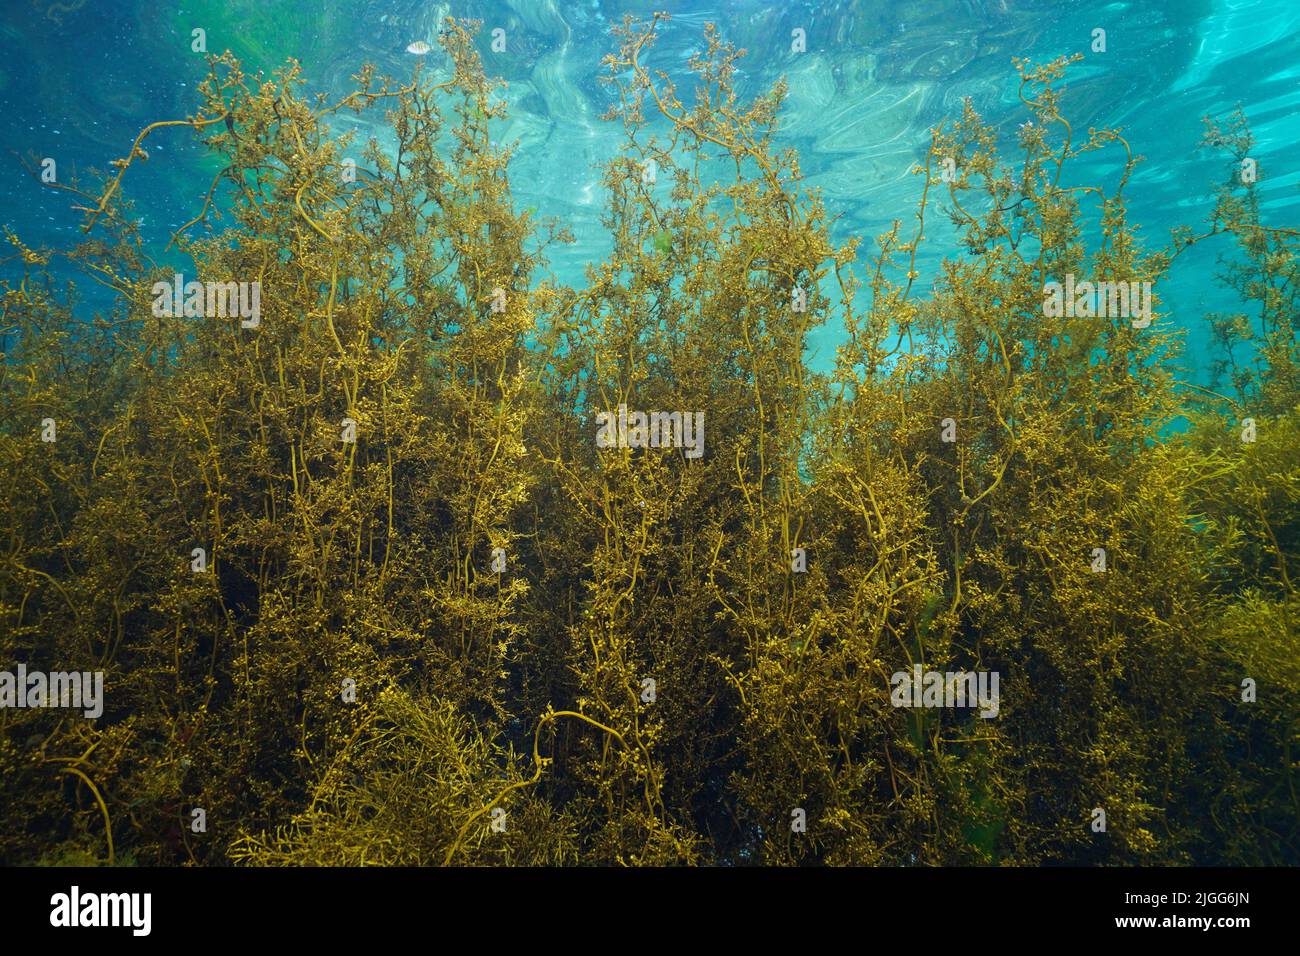 Alga japonesa, Alga Sargassum muticum parda, submarina en el océano Atlántico, España, Galicia Foto de stock